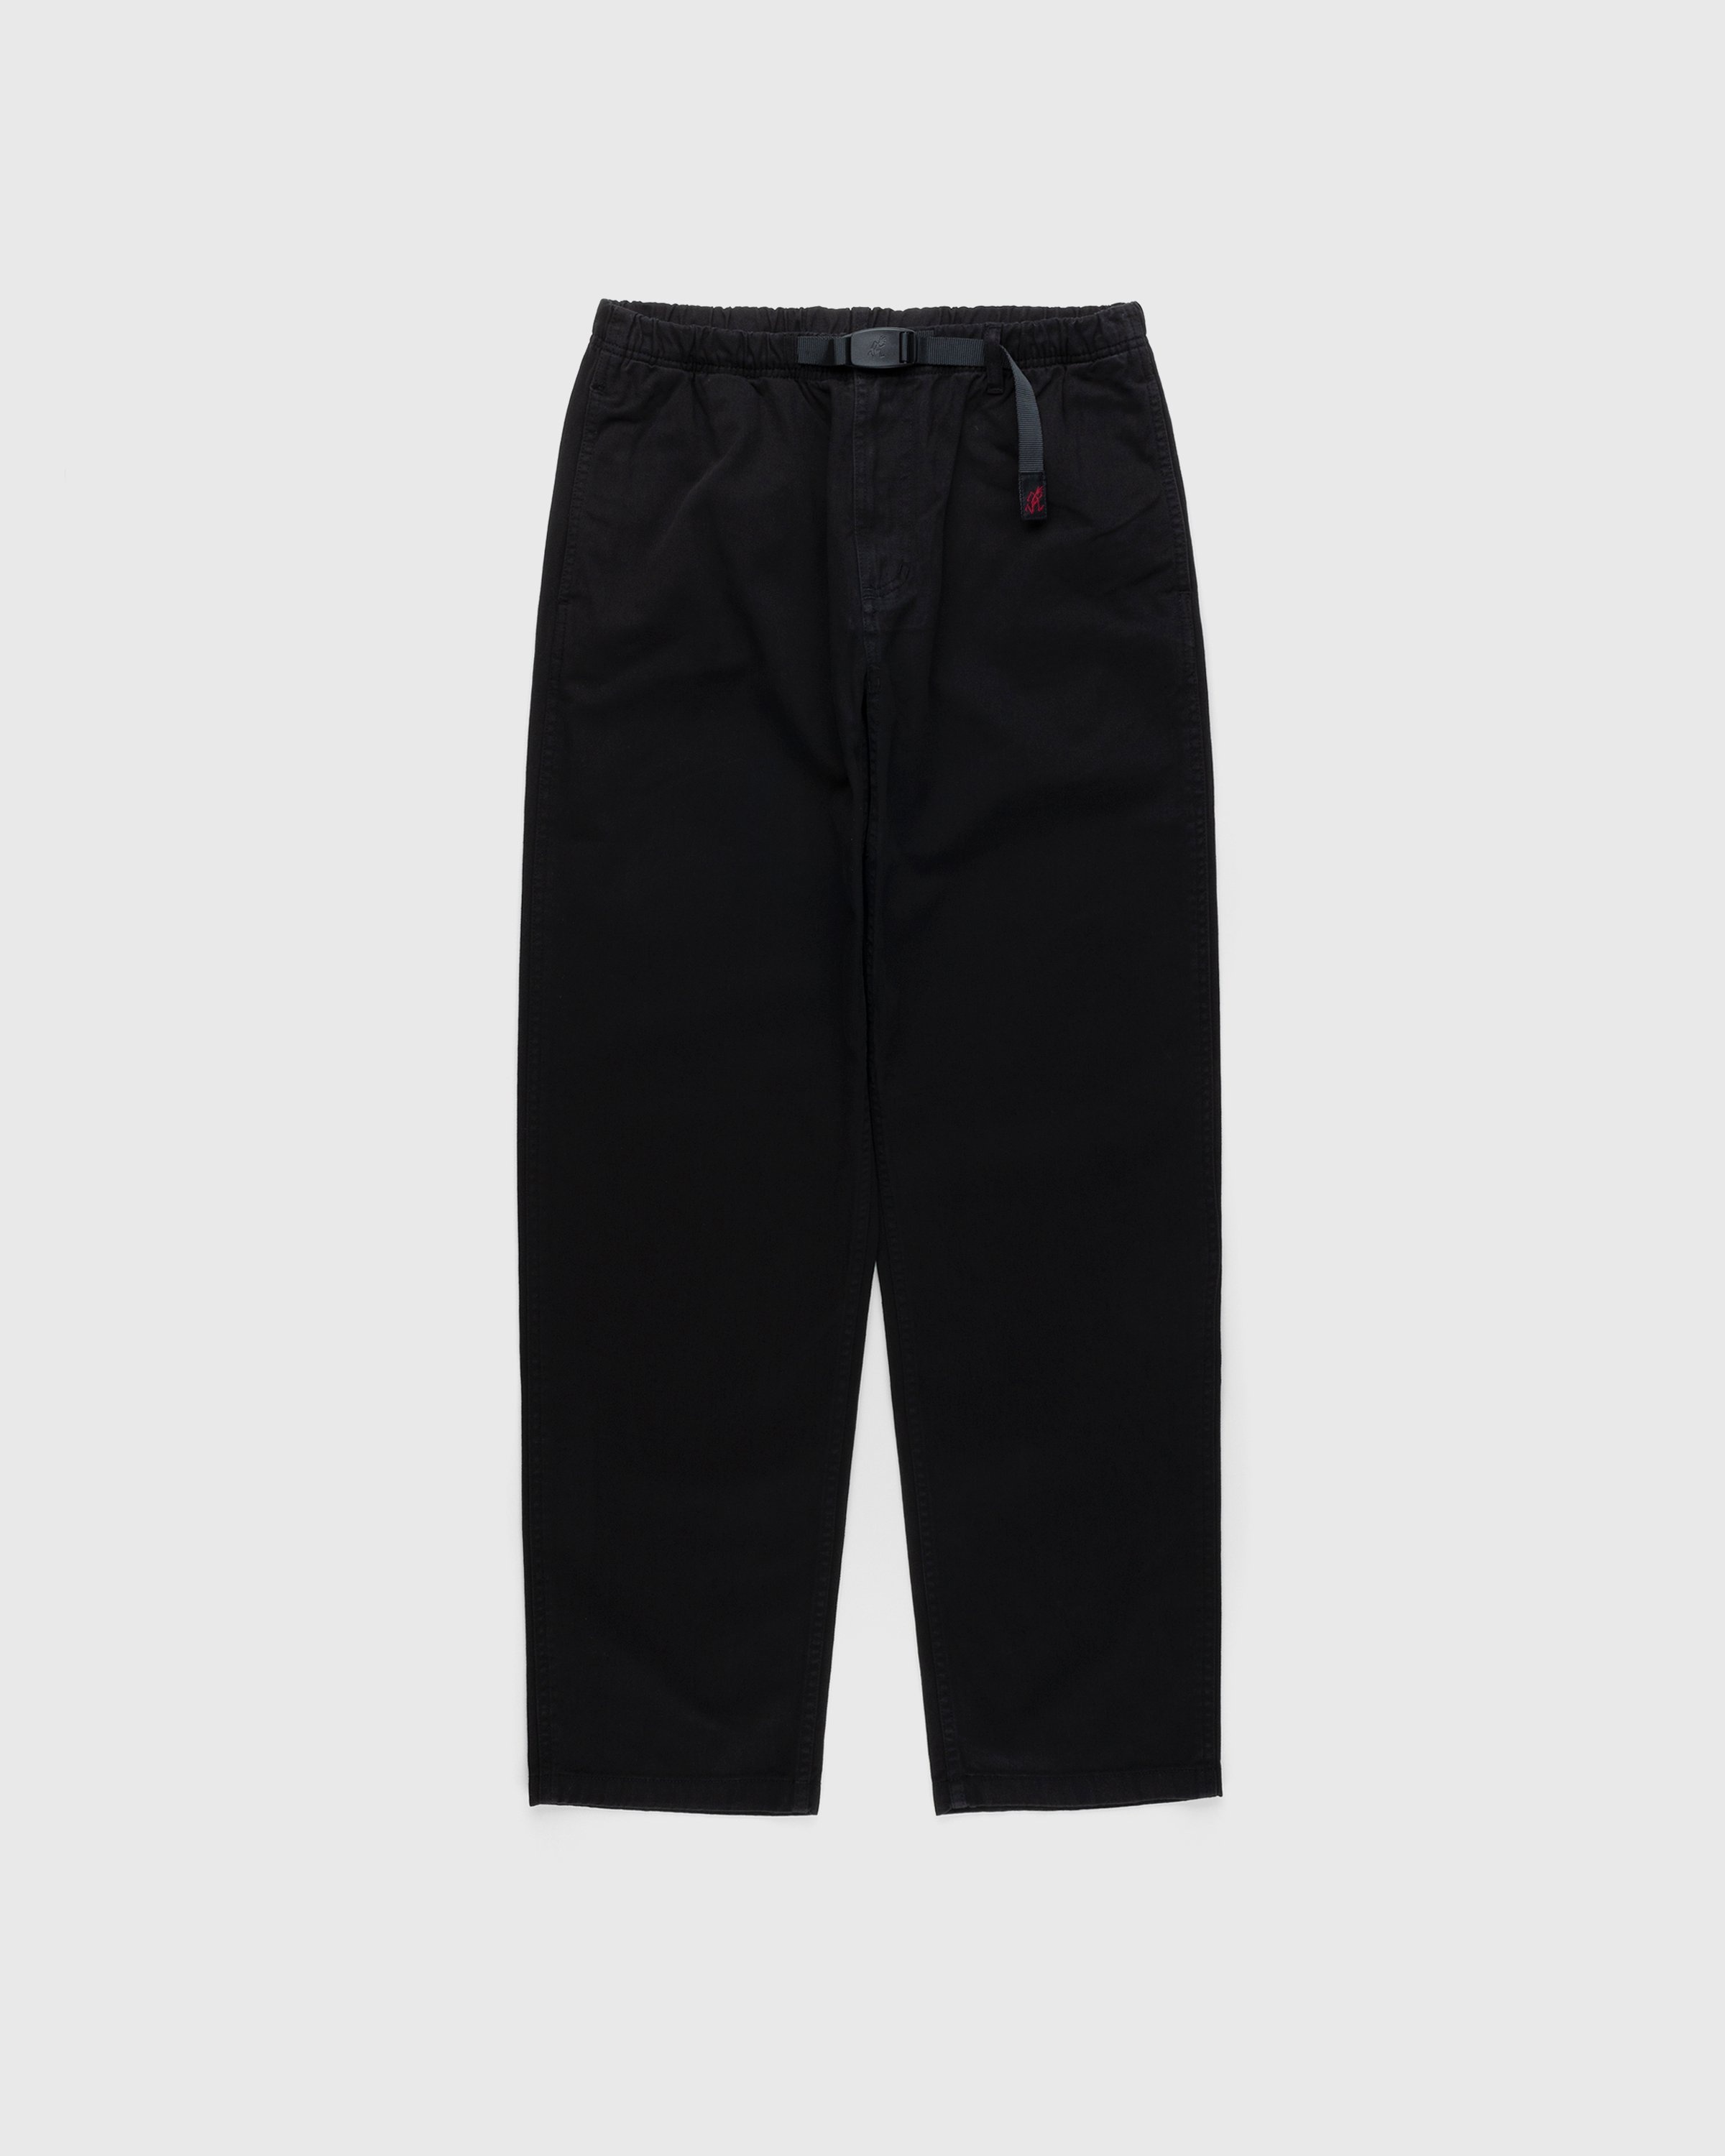 Gramicci – Gramicci Pant Black - Trousers - Black - Image 1